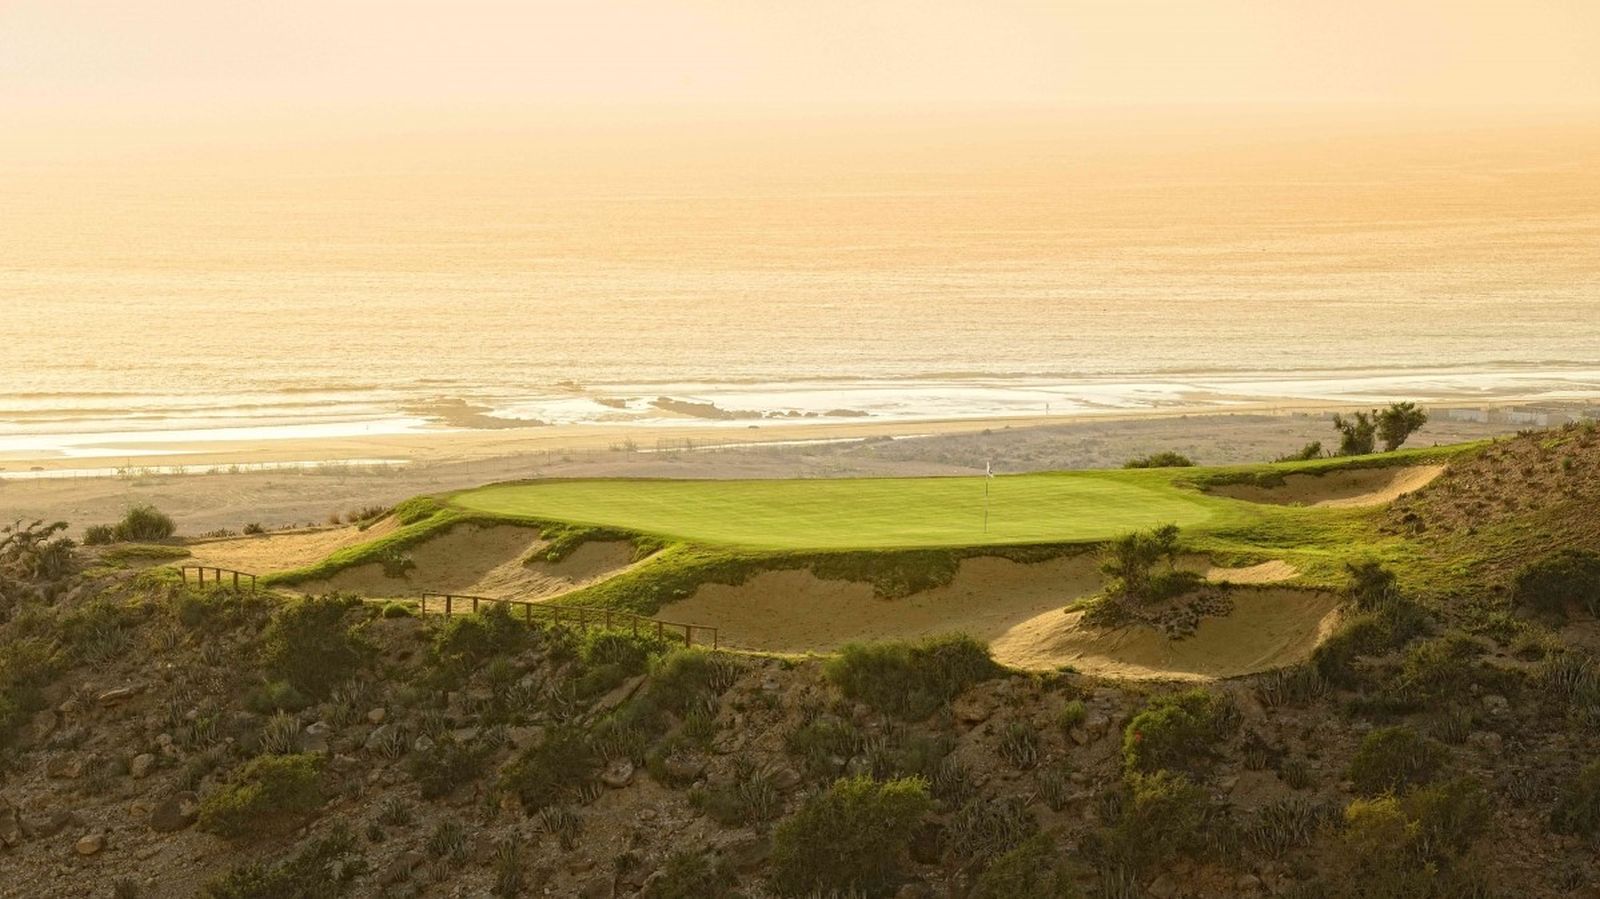 Marokko bietet herrliche Plätze am Meer wie beispielsweise die Anlage von Tazegzout Golf, 20 Minuten nördlich von Agadir. © Tazegzout Golf